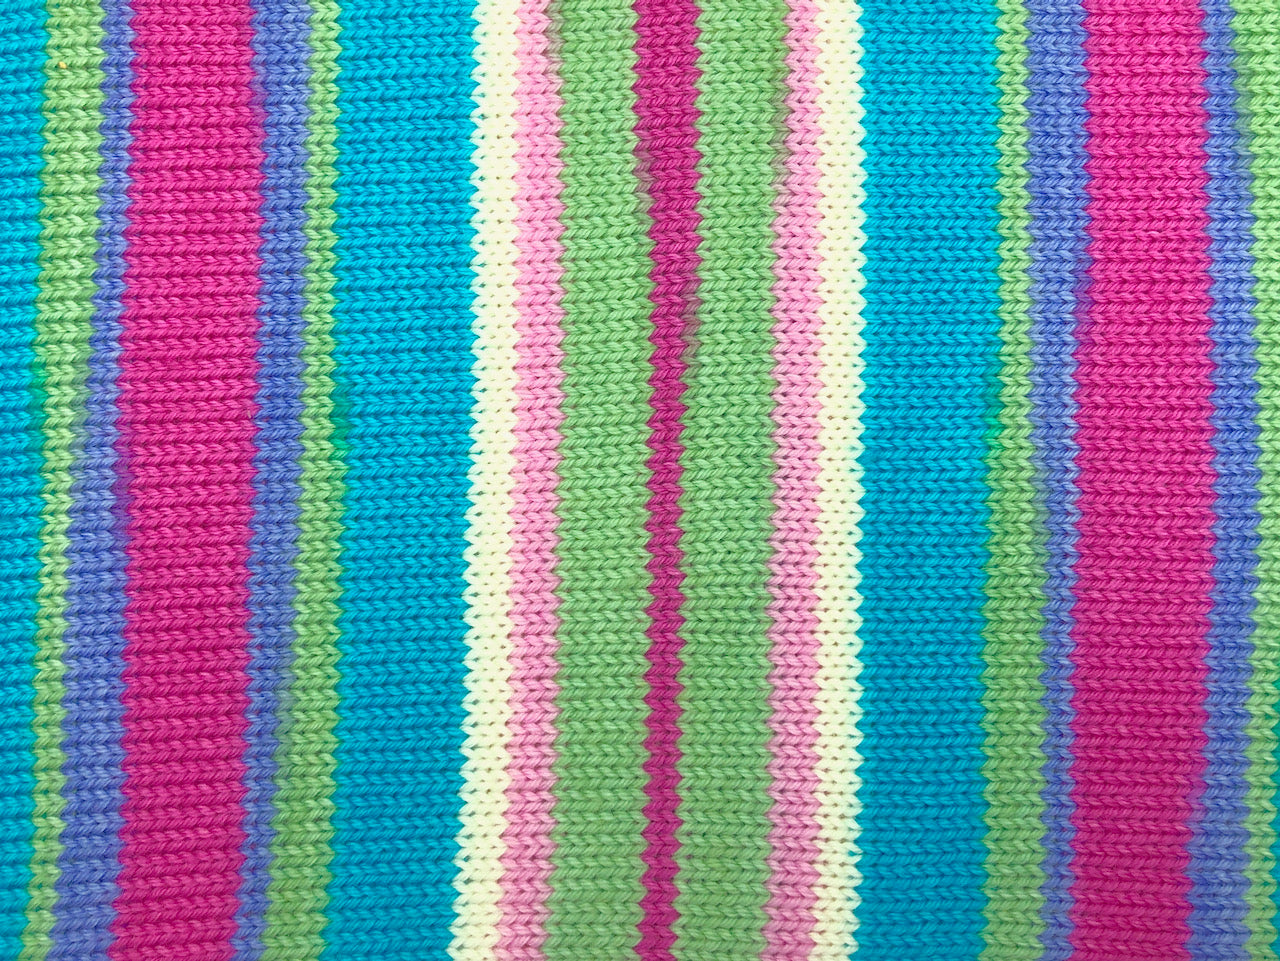 Sweet pea self-striping sock yarn